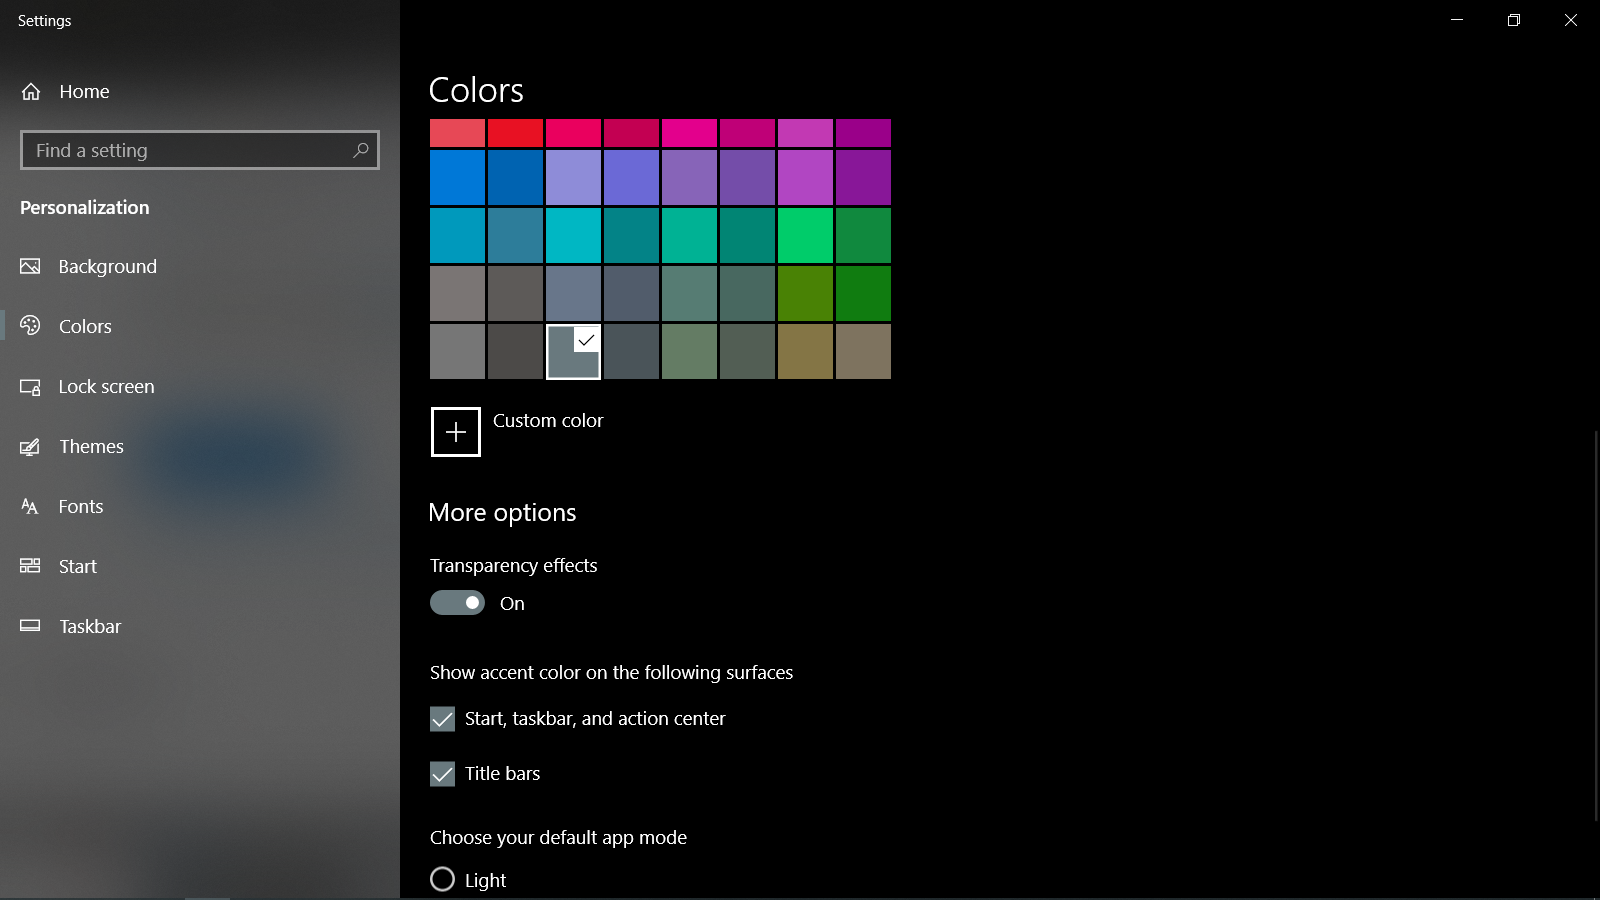 Bạn yêu thích sự tinh tế và độc đáo? Hãy xem ngay hình nền Full Screen Start Menu trong Windows 10 để làm mới giao diện màn hình của mình. Với nhiều lựa chọn khác nhau cho phù hợp với sở thích của bạn, bạn chắc chắn sẽ phải say mê khi đặt hình nền này. 87.Bạn đang cảm thấy không thoải mái với cách mở cài đặt Start Menu trên Windows 10 của mình? Đừng lo lắng, chúng tôi có giải pháp cho bạn! Bằng cách thay đổi cách mở cài đặt Start Menu, bạn sẽ có một giao diện đẹp và dễ sử dụng hơn. Nhanh tay xem ngay để biết thêm chi tiết! 88.Bạn muốn làm mới giao diện máy tính của mình? Thay đổi màu sắc Start menu và Taskbar trên Windows 11 là một trong những cách hiệu quả nhất để làm điều đó. Với nhiều tùy chọn màu sắc đẹp mắt và hướng dẫn chi tiết, bạn sẽ không phải vật vã để sử dụng công cụ này. 89.Nếu bạn muốn tối ưu hóa giao diện máy tính của mình mà không phải mất nhiều thời gian, thì thay đổi màu Taskbar trên Windows 10 chắc chắn là một giải pháp tốt. Điều này sẽ giúp cho giao diện của bạn trở nên sinh động và độc đáo hơn. Xem ngay để trải nghiệm những màu sắc mới mẻ! 90.Bạn đang tìm kiếm một công cụ để thay đổi giao diện máy tính của mình? Hãy tải xuống và sử dụng công cụ Pure Dark Theme Tool 1.